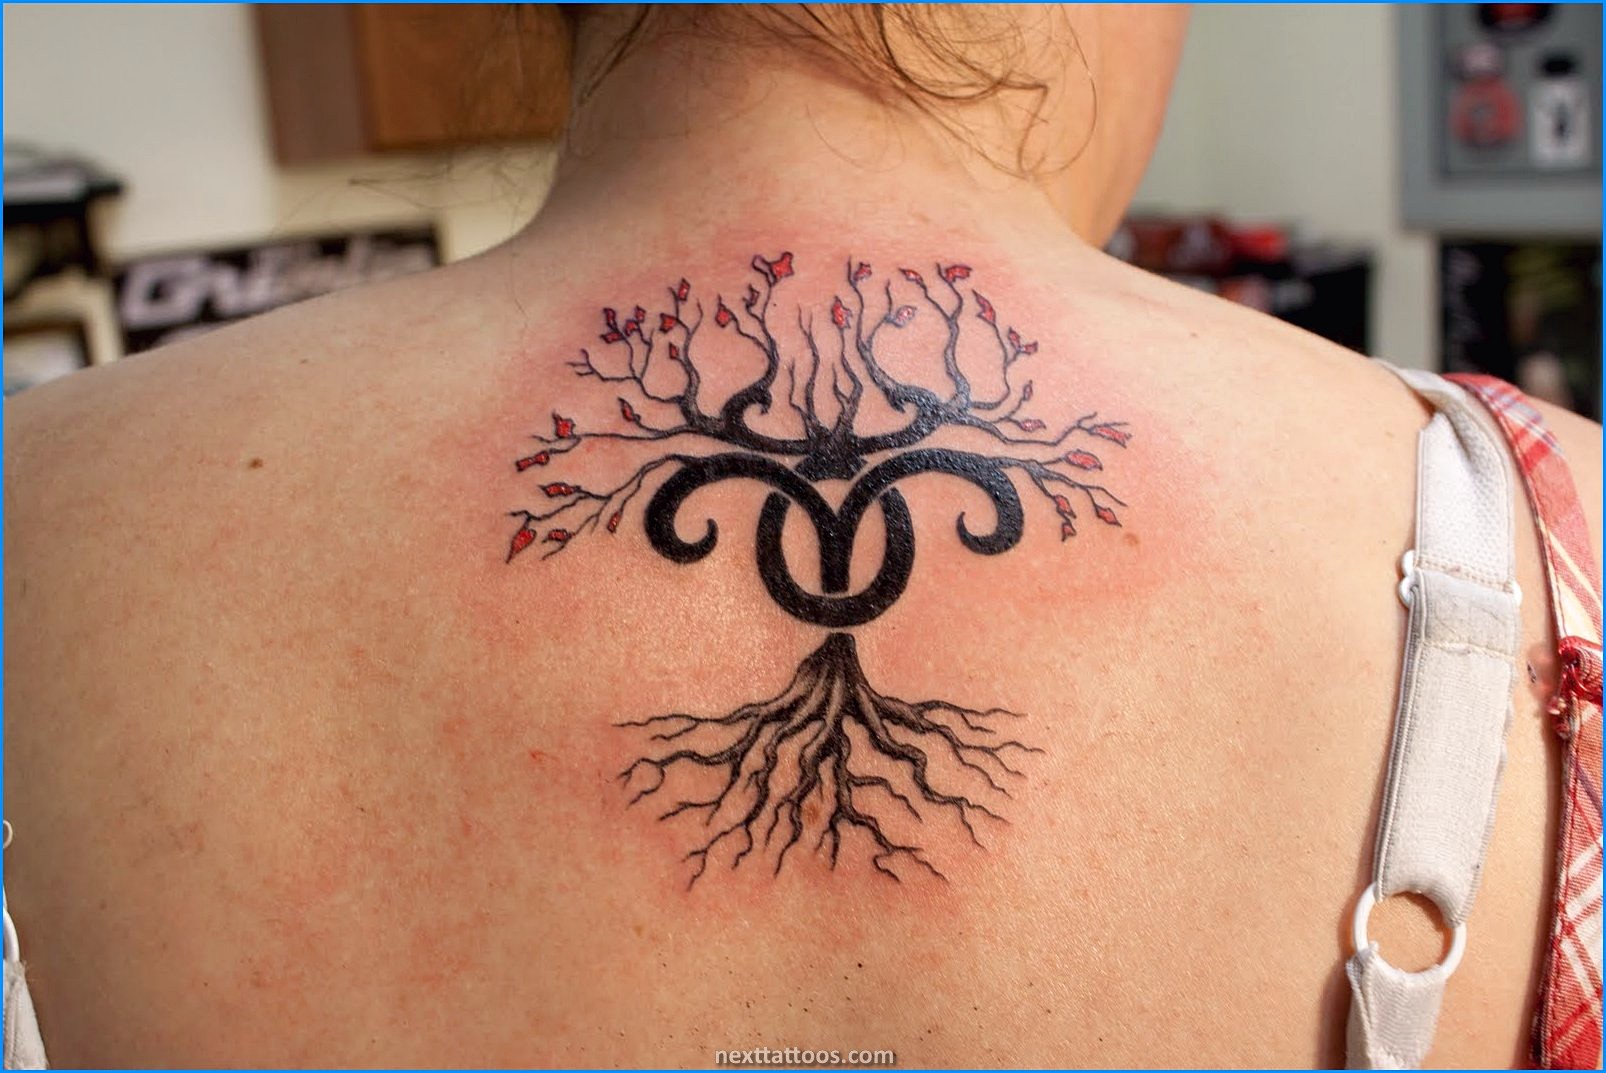 Aries Tattoo Ideas - Aries Tattoo Ideas For Ladies